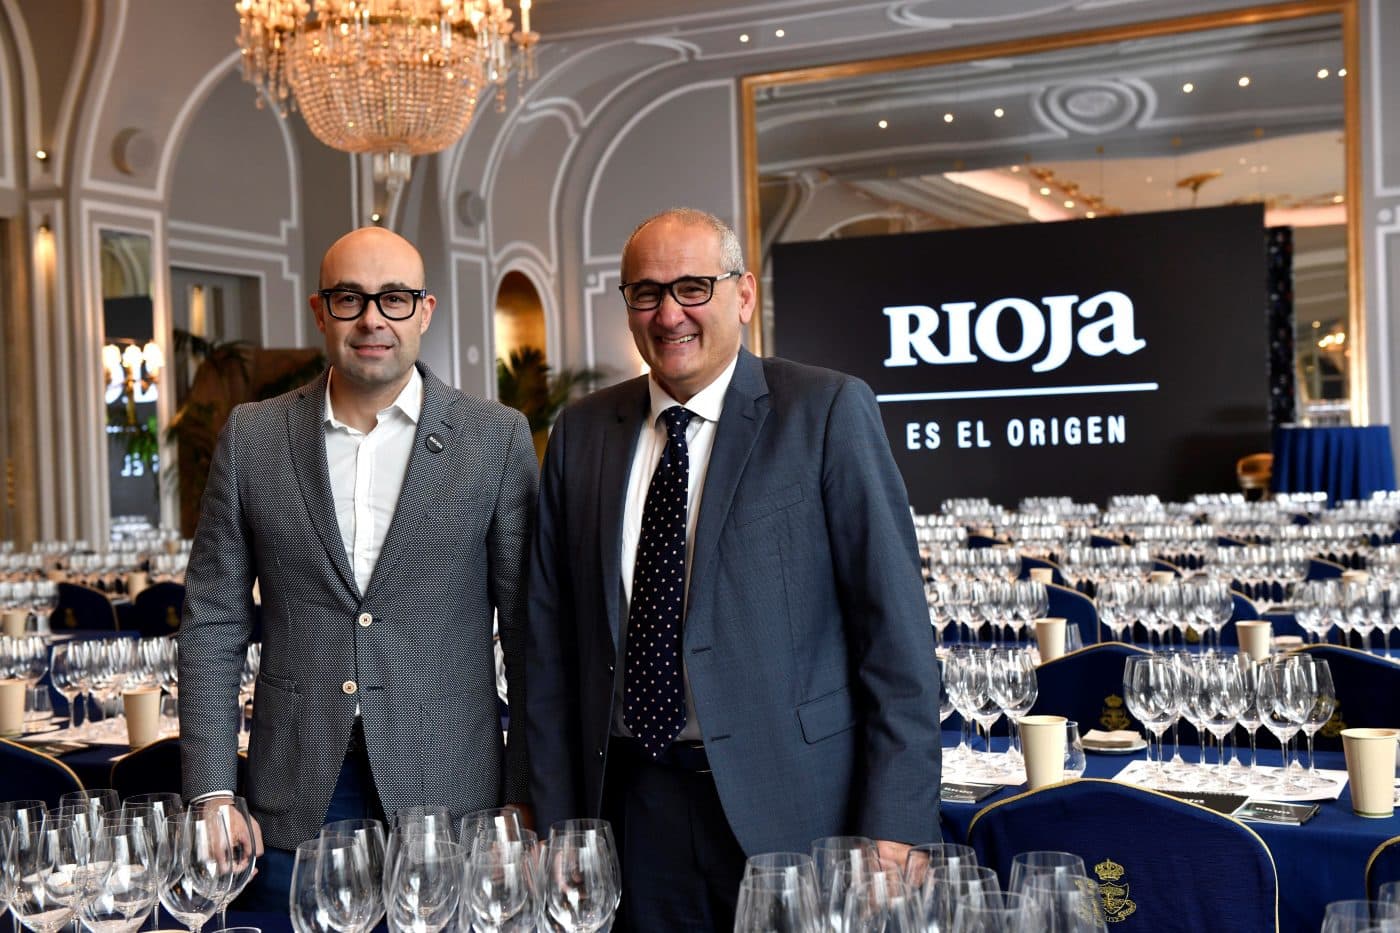 60 bodegas de Rioja participan en Madrid en una cata exclusiva con vinos "capaces de emocionar" 3